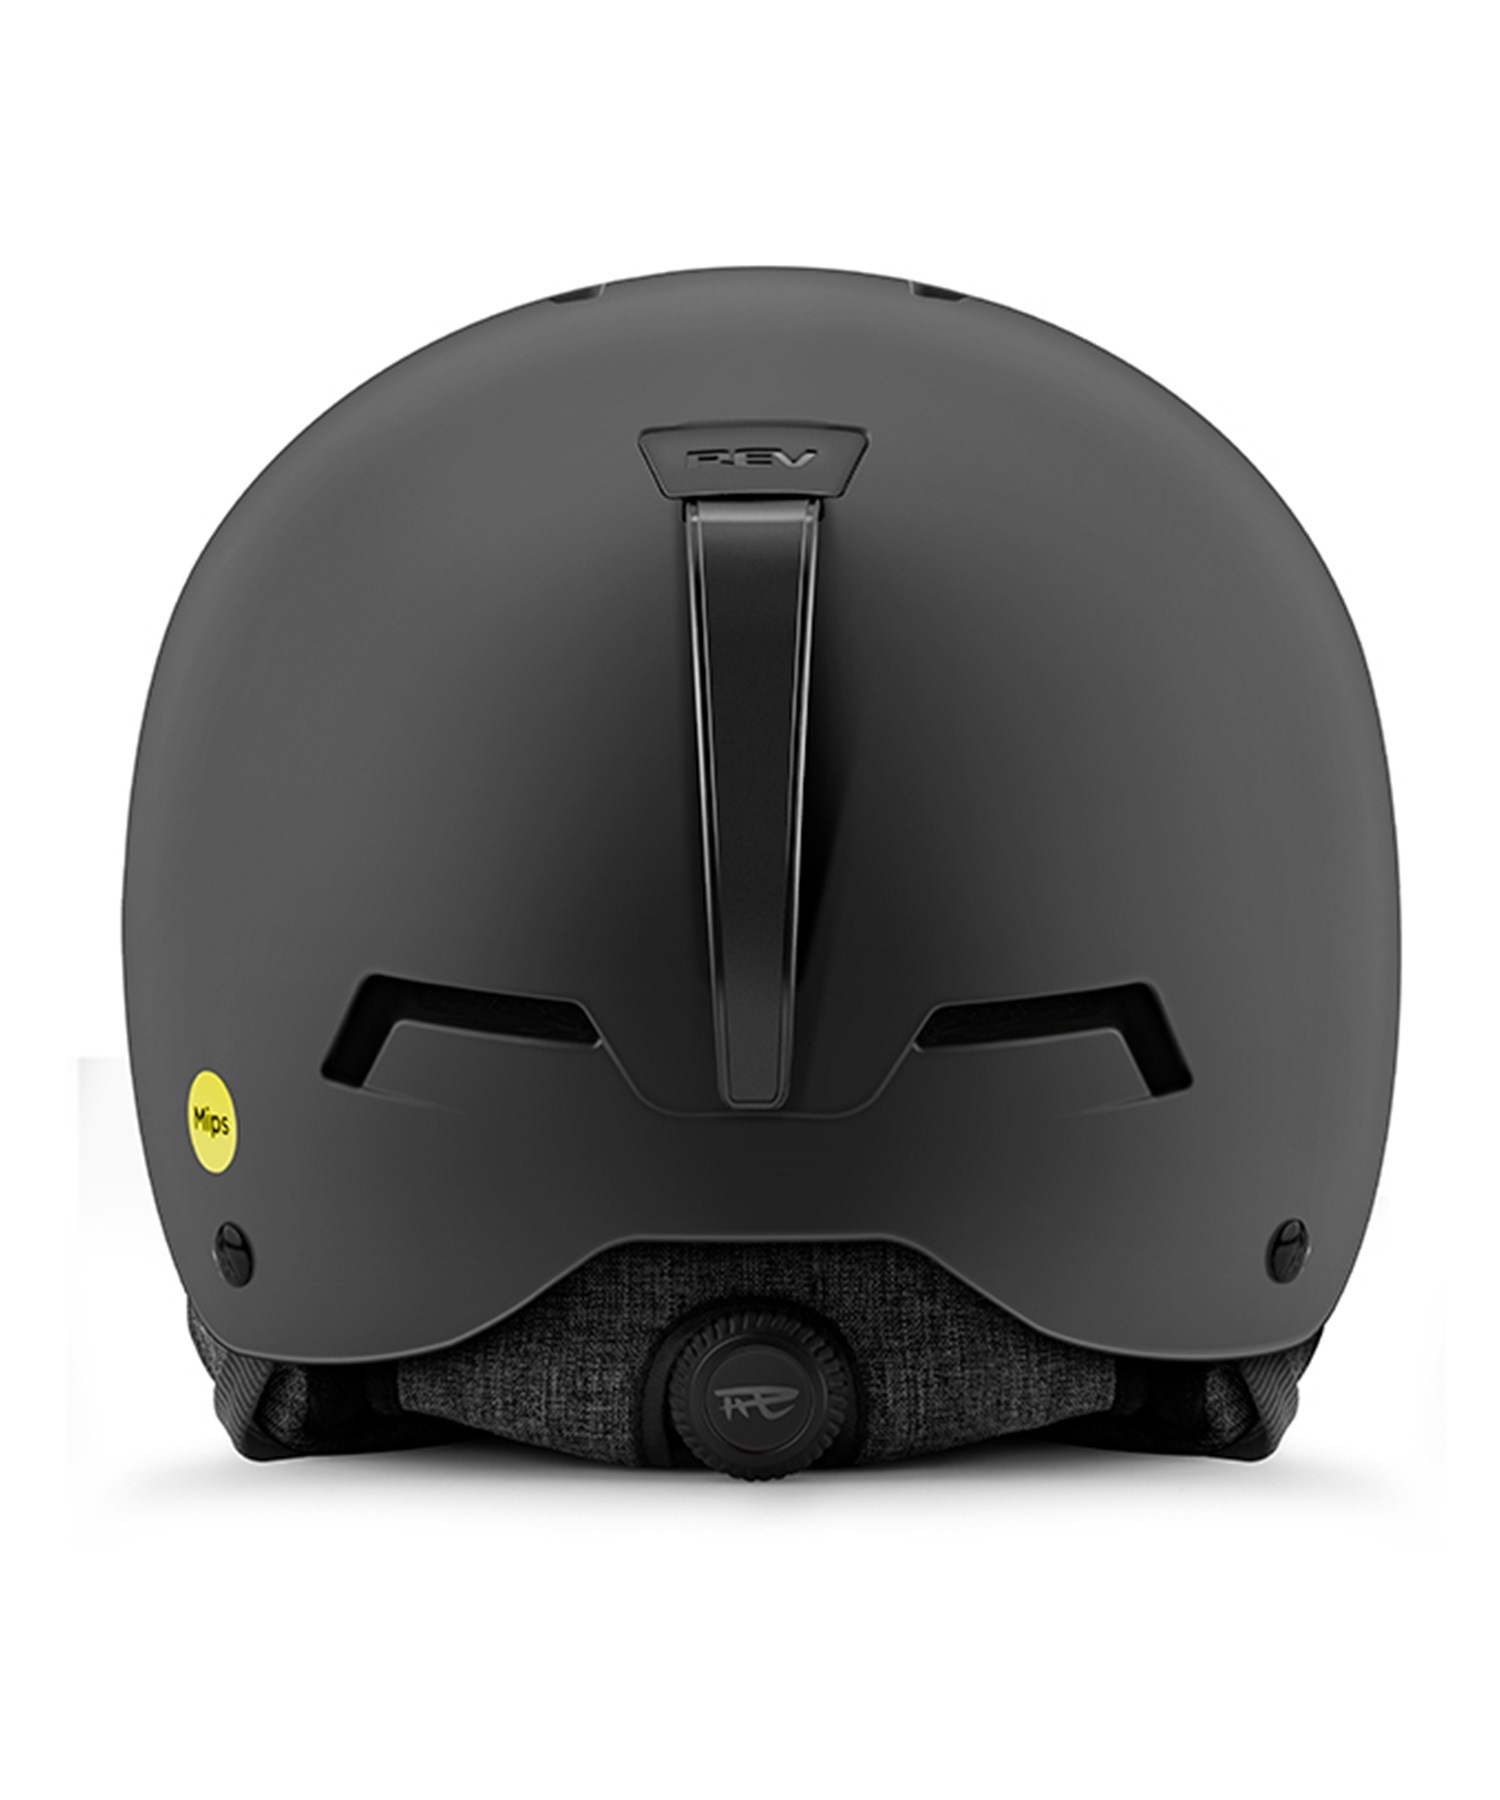 スノーボード ヘルメット ユニセックス REV レブ MIPS ミップス ORIX ムラサキスポーツ 23-24モデル KK L15(NG-L)